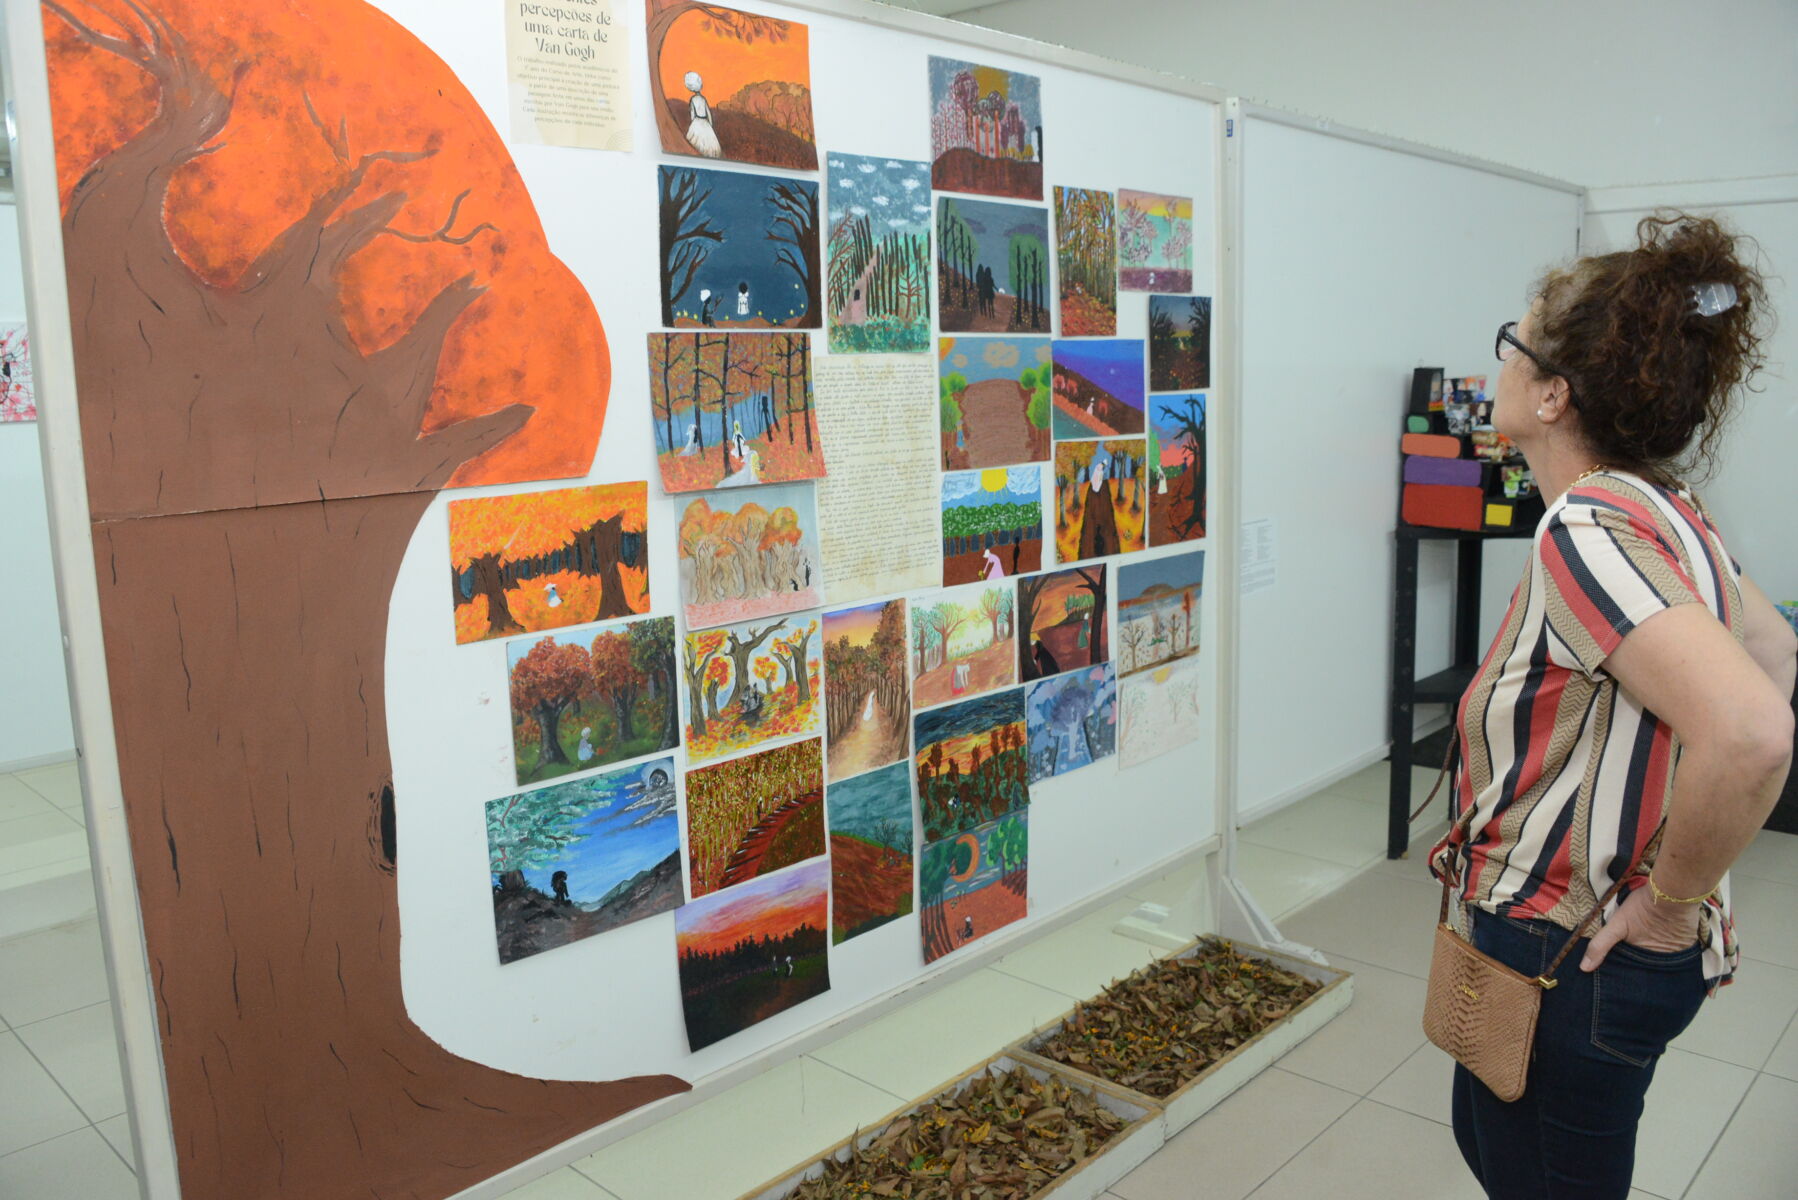 Mostra de Arte divulgou trabalhos realizados por acadêmicos nas disciplinas do curso